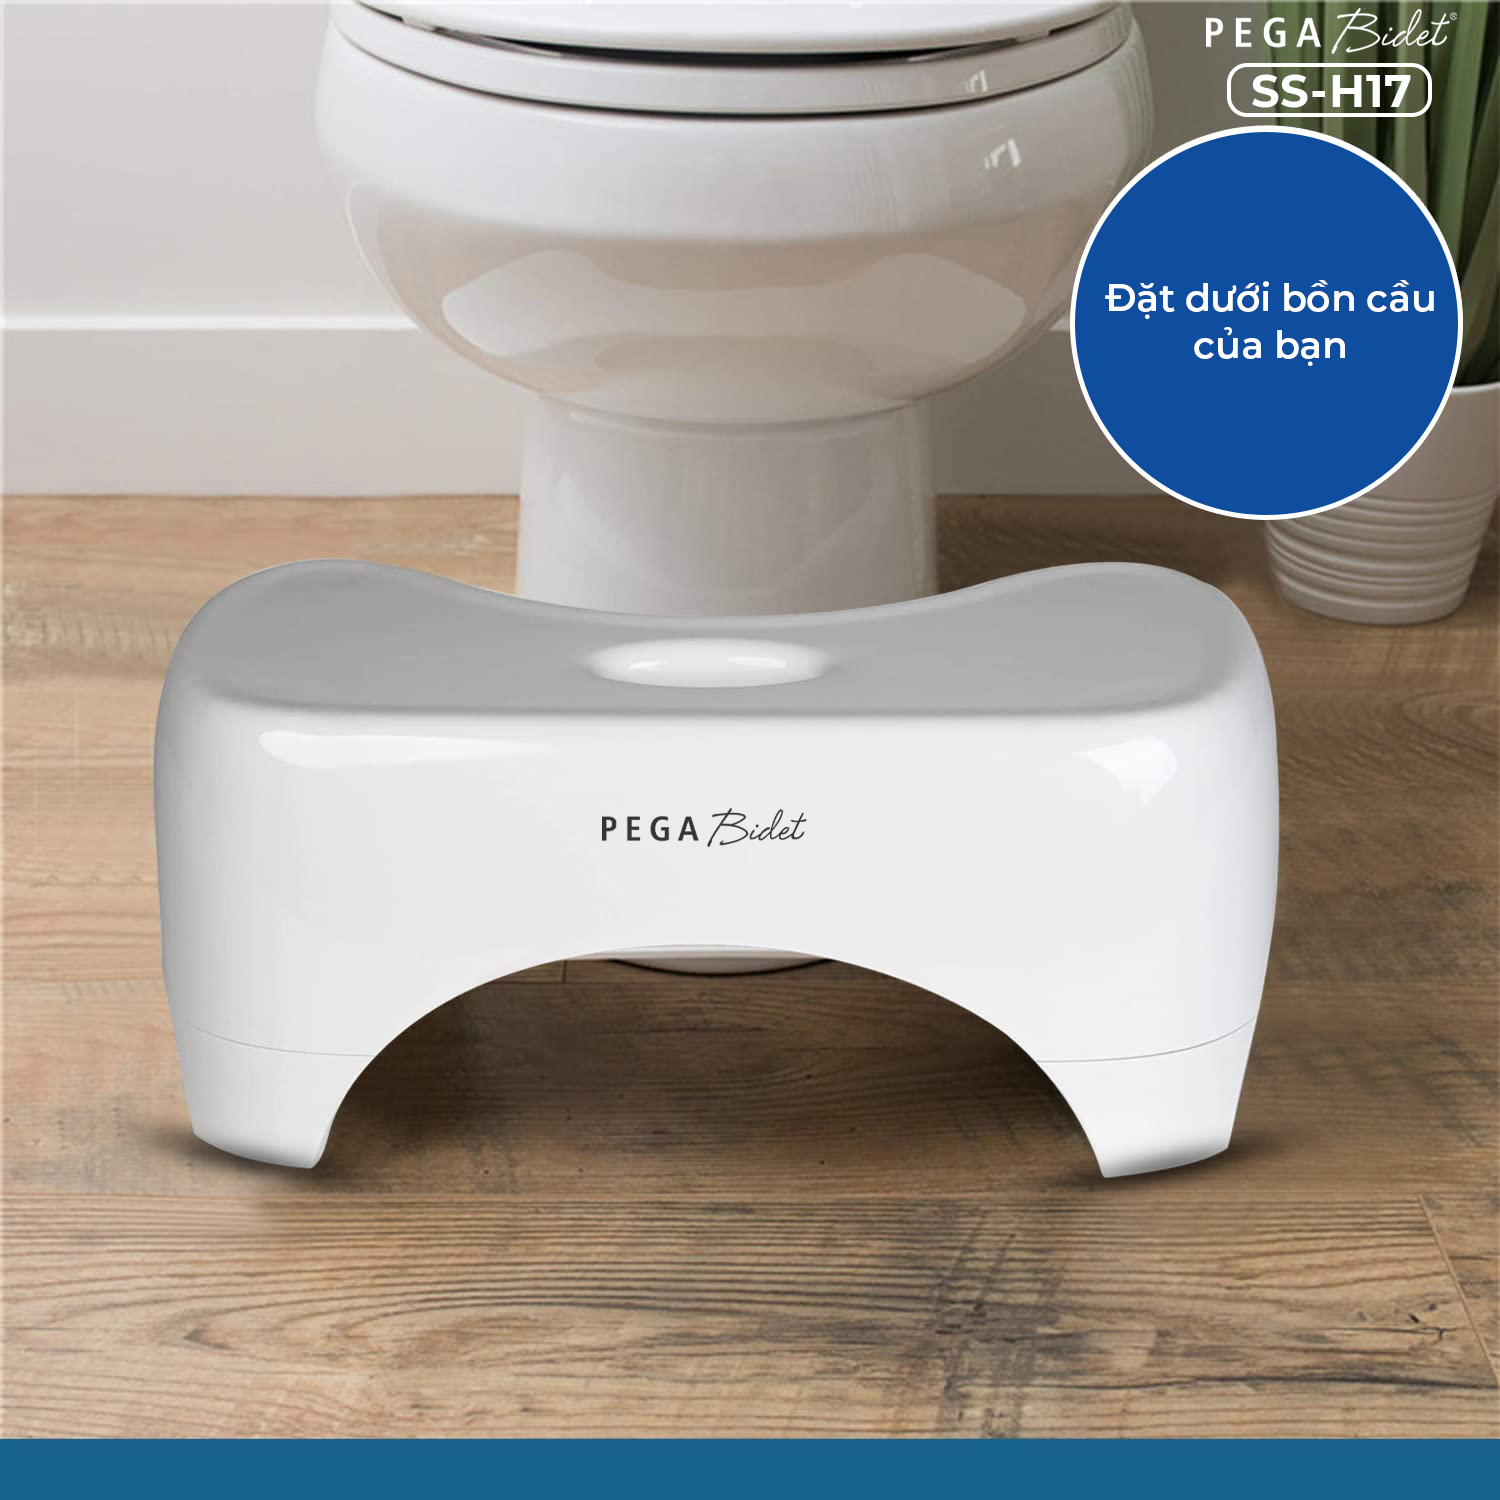 Ghế kê chân toilet PEGA Bidet SS-H17, hỗ trợ đi vệ sinh dễ dàng và thoải mái chống táo bón, làm từ nhựa y tế, ưa chuộng tại Mỹ